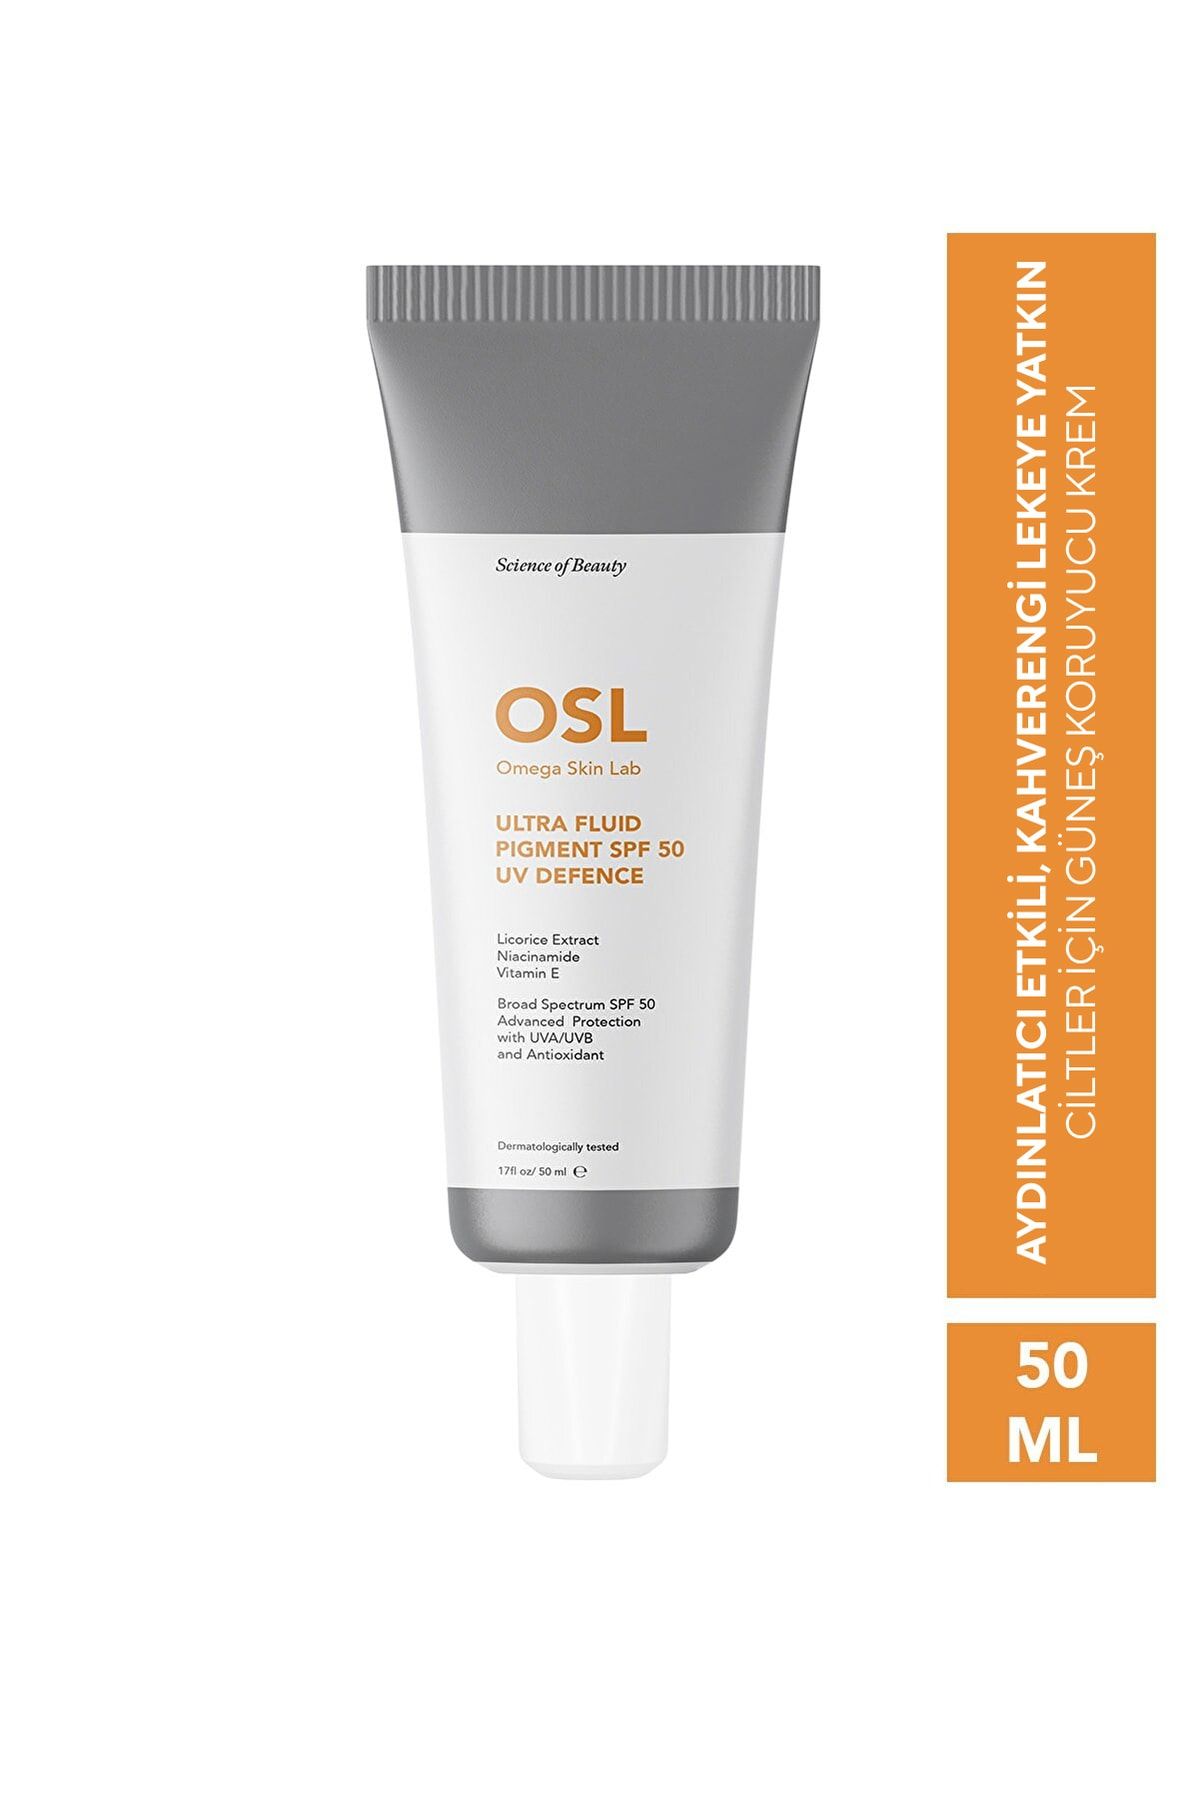 OSL Omega Skin Lab Omega Skin Lab Ultrafluid Pigment Spf50 50ml (LEKELİ CİLTLER İÇİN GÜNEŞ KREMİ)